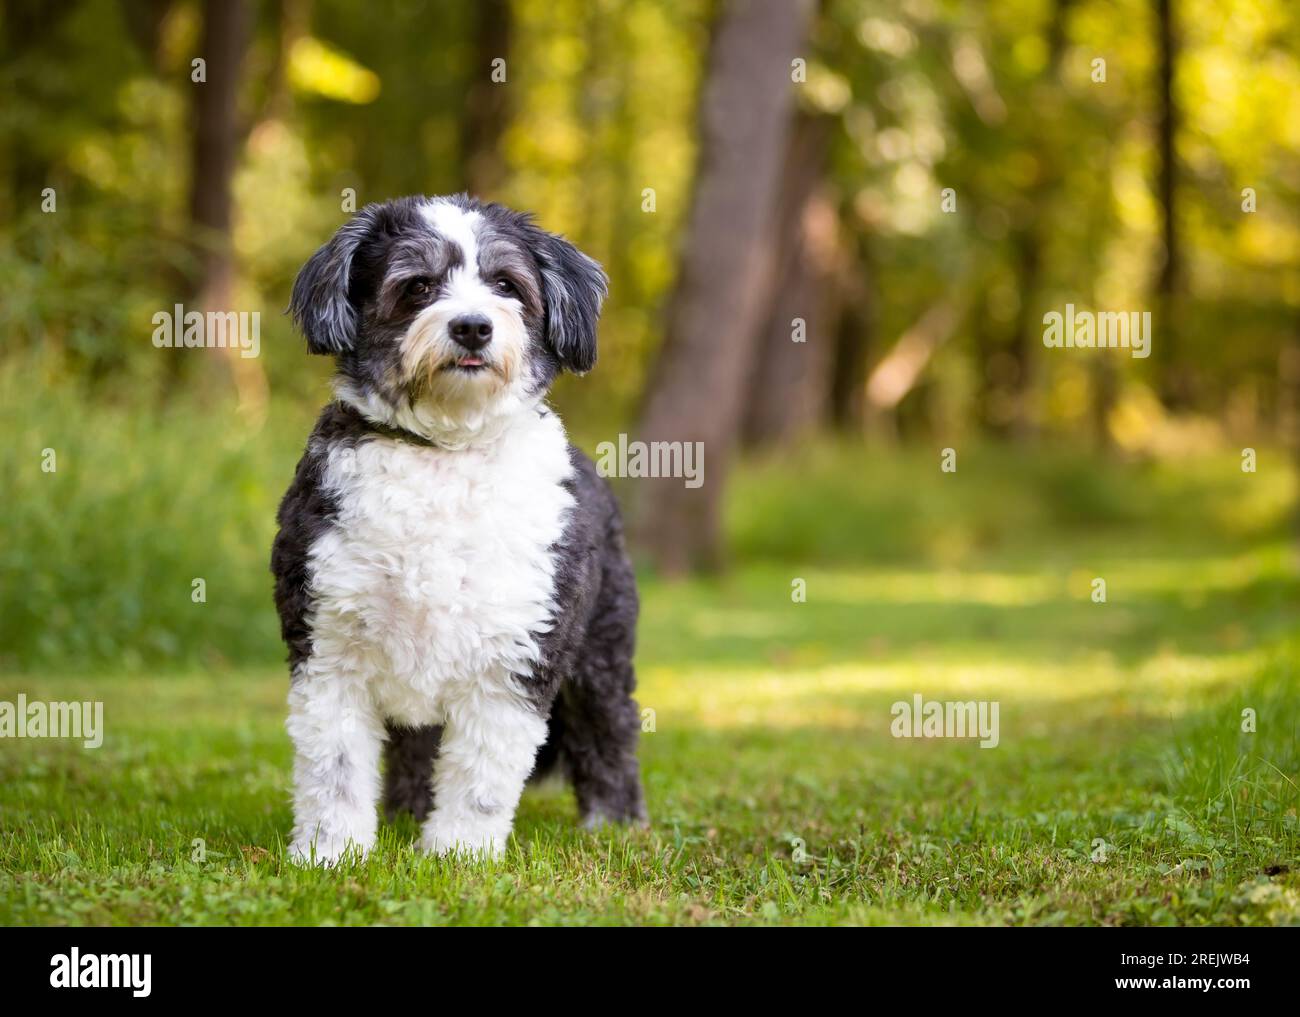 Ein schwarz-weißer Shih Tzu x Poodle Mischhund, der in die Kamera schaut Stockfoto